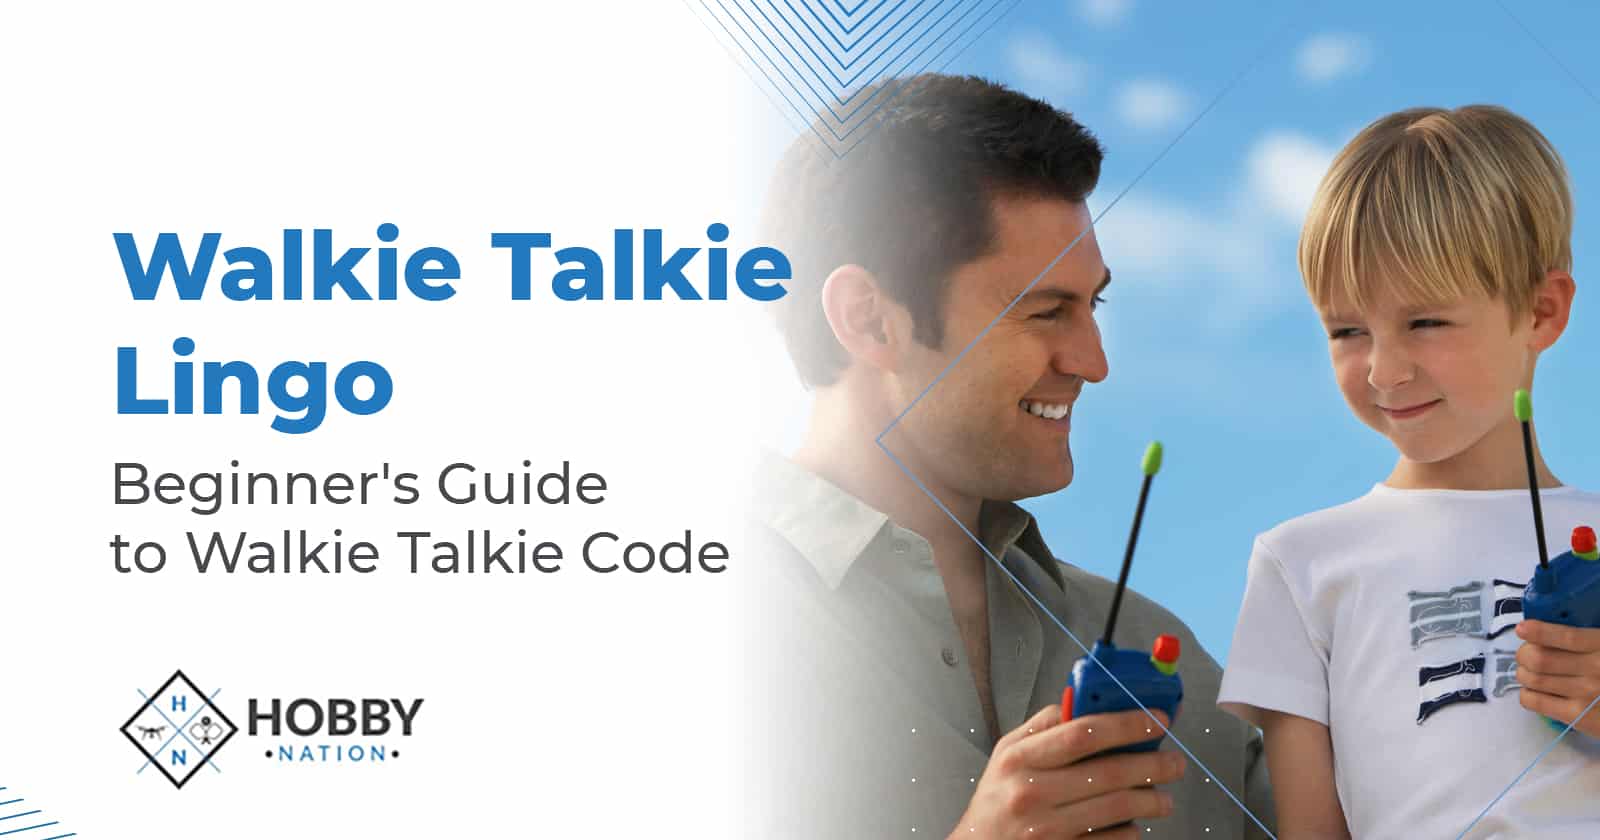 Walkie Talkie Lingo – Beginner's Guide to Walkie Talkie Code